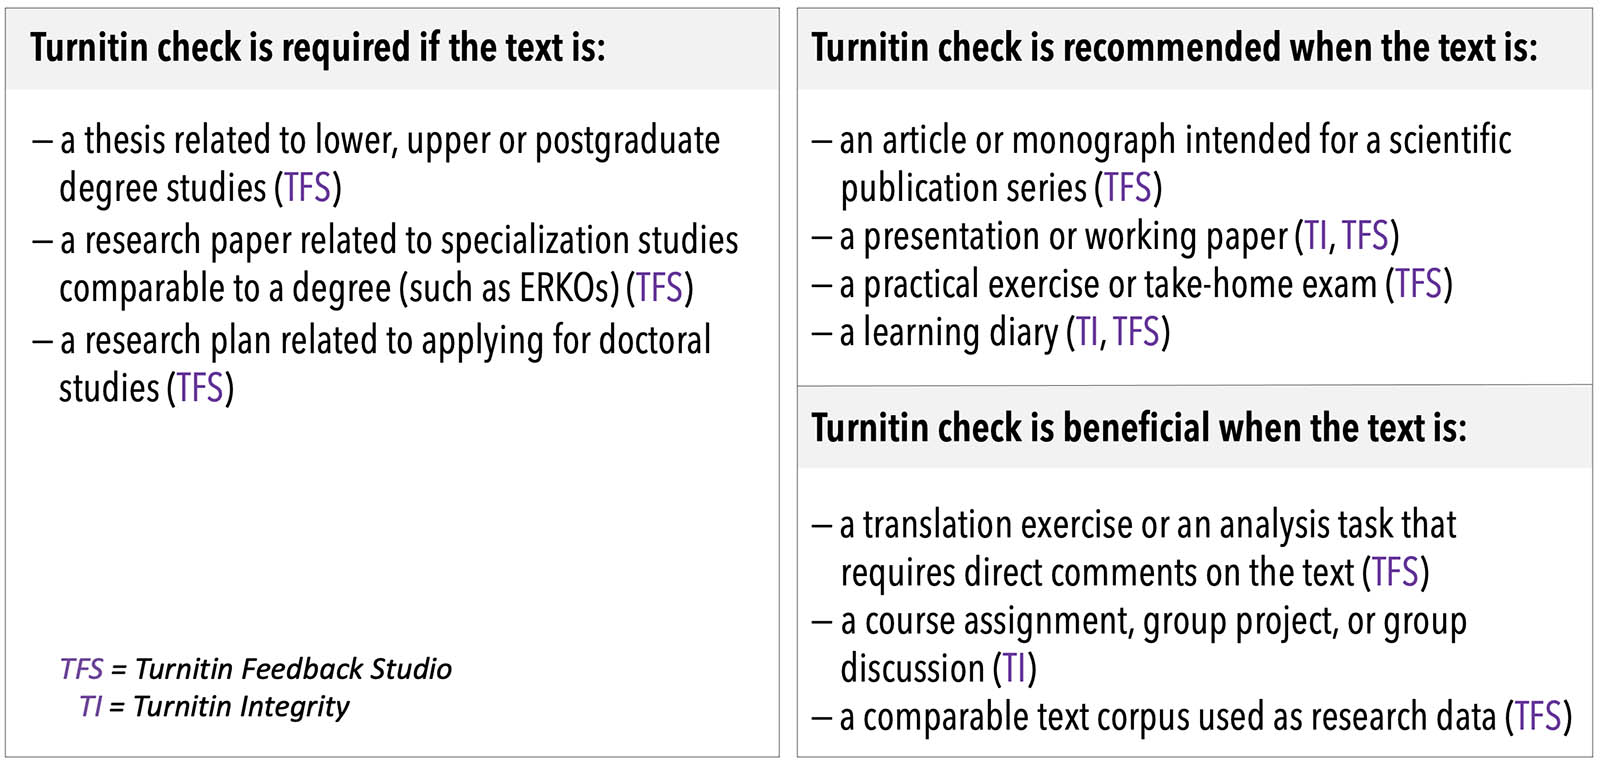 Kaavio Turnitinin käyttötavoista: #Turnitin-tarkastus vaaditaan, kun teksti on: 1) alempaan, ylempään tai jatkotutkintoon liittyvä opinnäyte (TFS), 2) tutkintoon vertautuviin erikoistumisopintoihin kuten ERKO:t liittyvä tutkielma (TFS), 3) tutkijakoulutukseen hakuun liittyvä tutkimus-suunnitelma (TFS). #Turnitin-tarkastusta suositetaan, kun teksti on: 1) tieteelliseen julkaisusarjaan tuleva artikkeli tai monografia (TFS), 2) esitelmä tai työpaperi (TI, TFS), 3) harjoitustyö tai kotitentti (TFS), 4) oppimispäiväkirja (TI, TFS). #Turnitin-tarkastuksesta on hyötyä, kun teksti on: 1) suoraan tekstiin kommentoitava käännöstehtävä tai laskuharjoitus (TFS) 2) kurssitehtävä, ryhmätehtävä tai ryhmäkeskustelu (TI), 3) vertailtava tekstikorpus tutkimusaineistona (TFS).